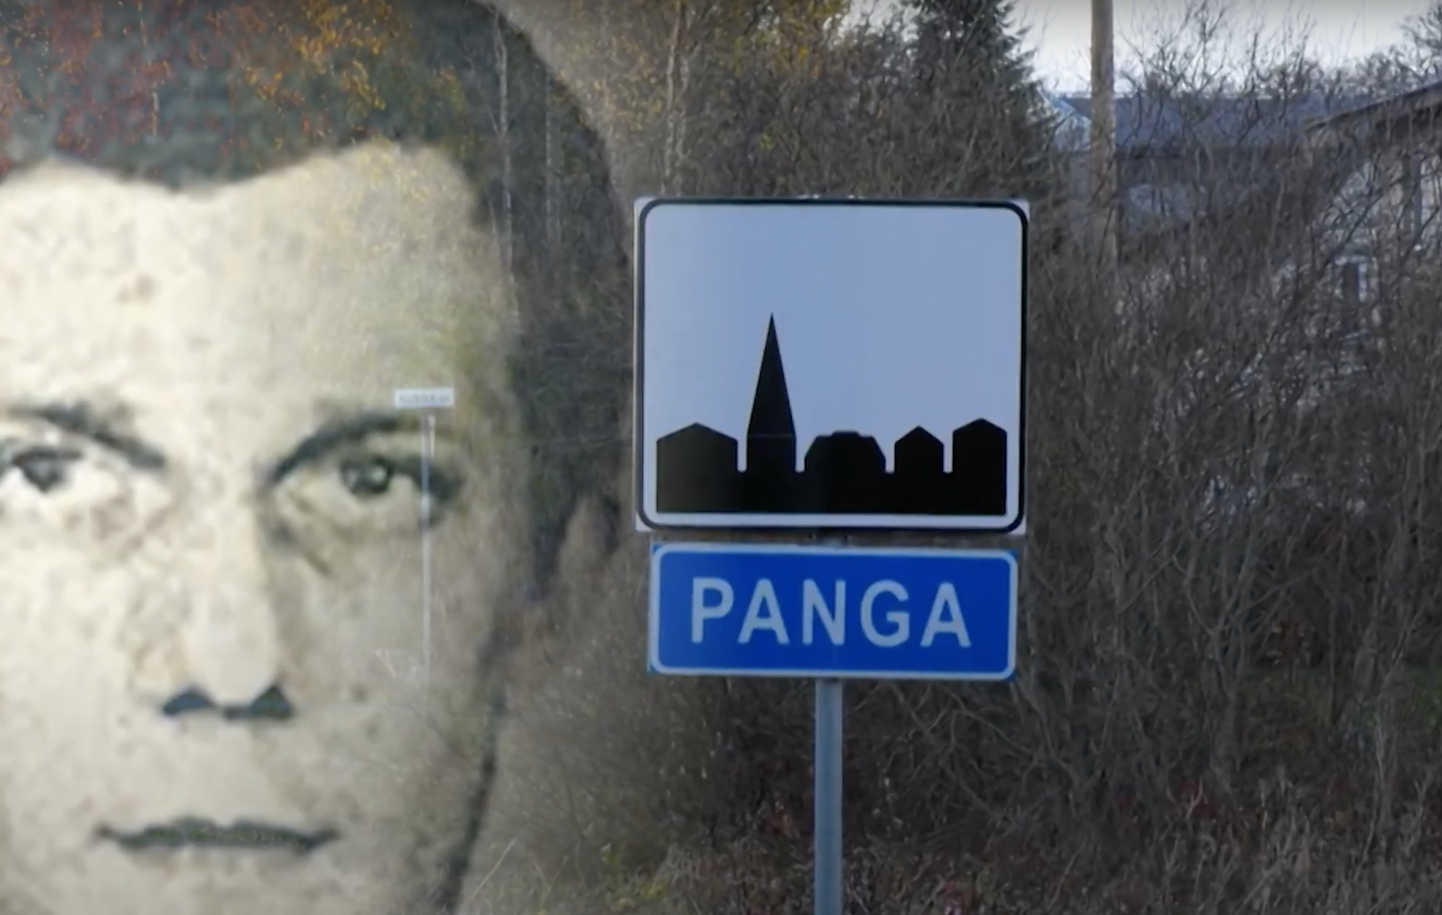 Пожизненно заключенный Василий Очкаленко постоянно навещает родной поселок Панга, где живет его отчим